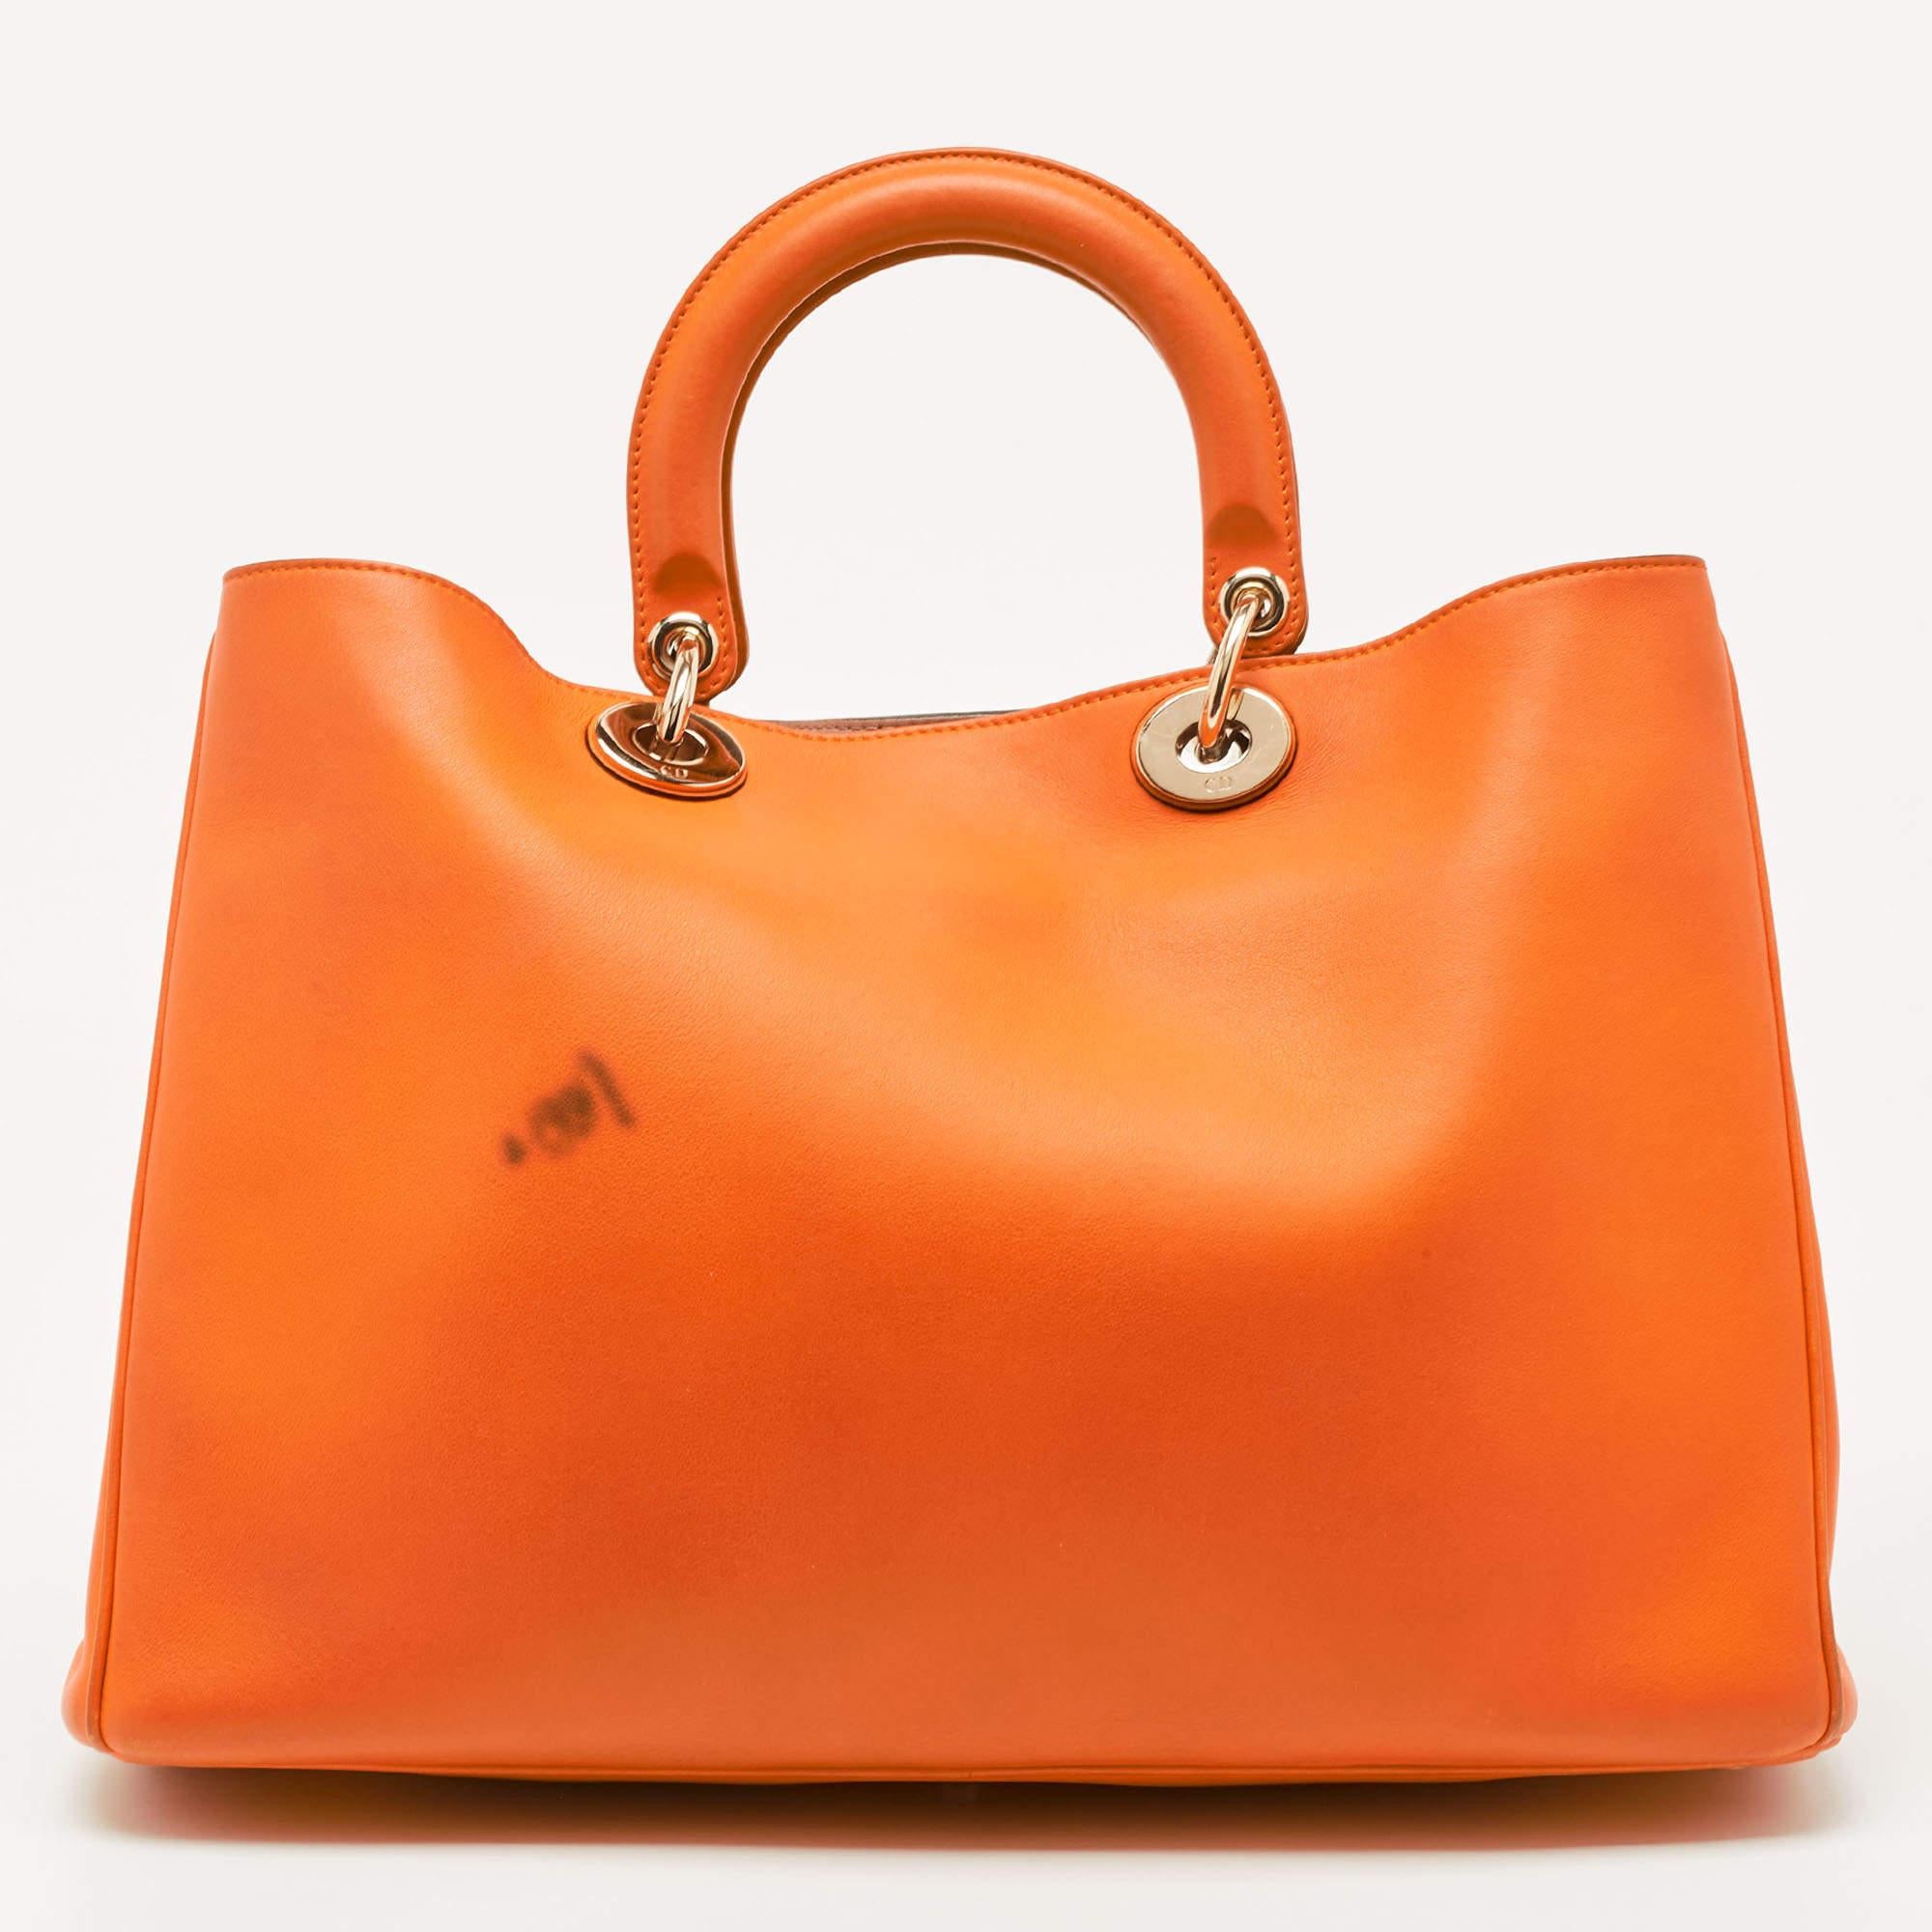 Mit dieser Tasche von Dior können Sie alles, was Sie brauchen, stilvoll transportieren. Gefertigt aus den besten MATERIALEN, ist dies ein Accessoire, das dauerhaften Stil und Gebrauch verspricht.

Enthält: Originalverpackung, abnehmbarer Riemen,